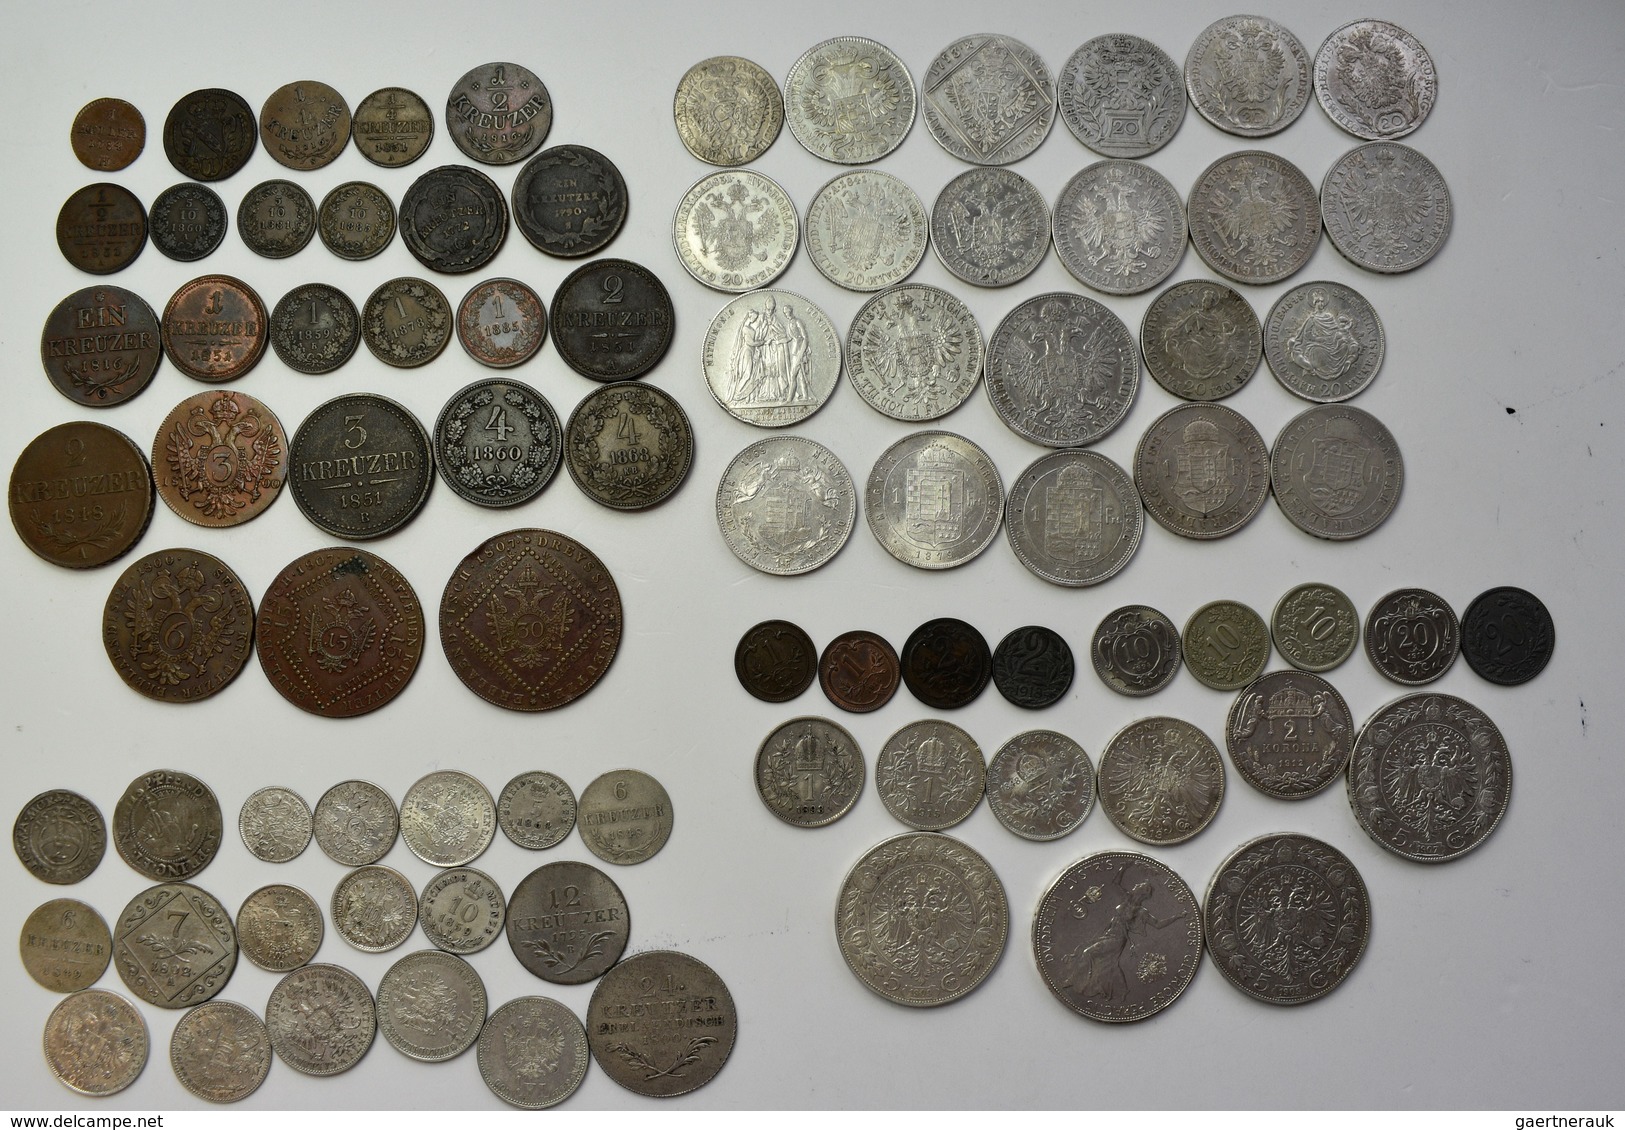 Haus Habsburg: Sammlung über 80 Diverse Münzen Aus Österreich-Ungarn, überwiegend 19. Jhd. Bis Krone - Andere - Europa